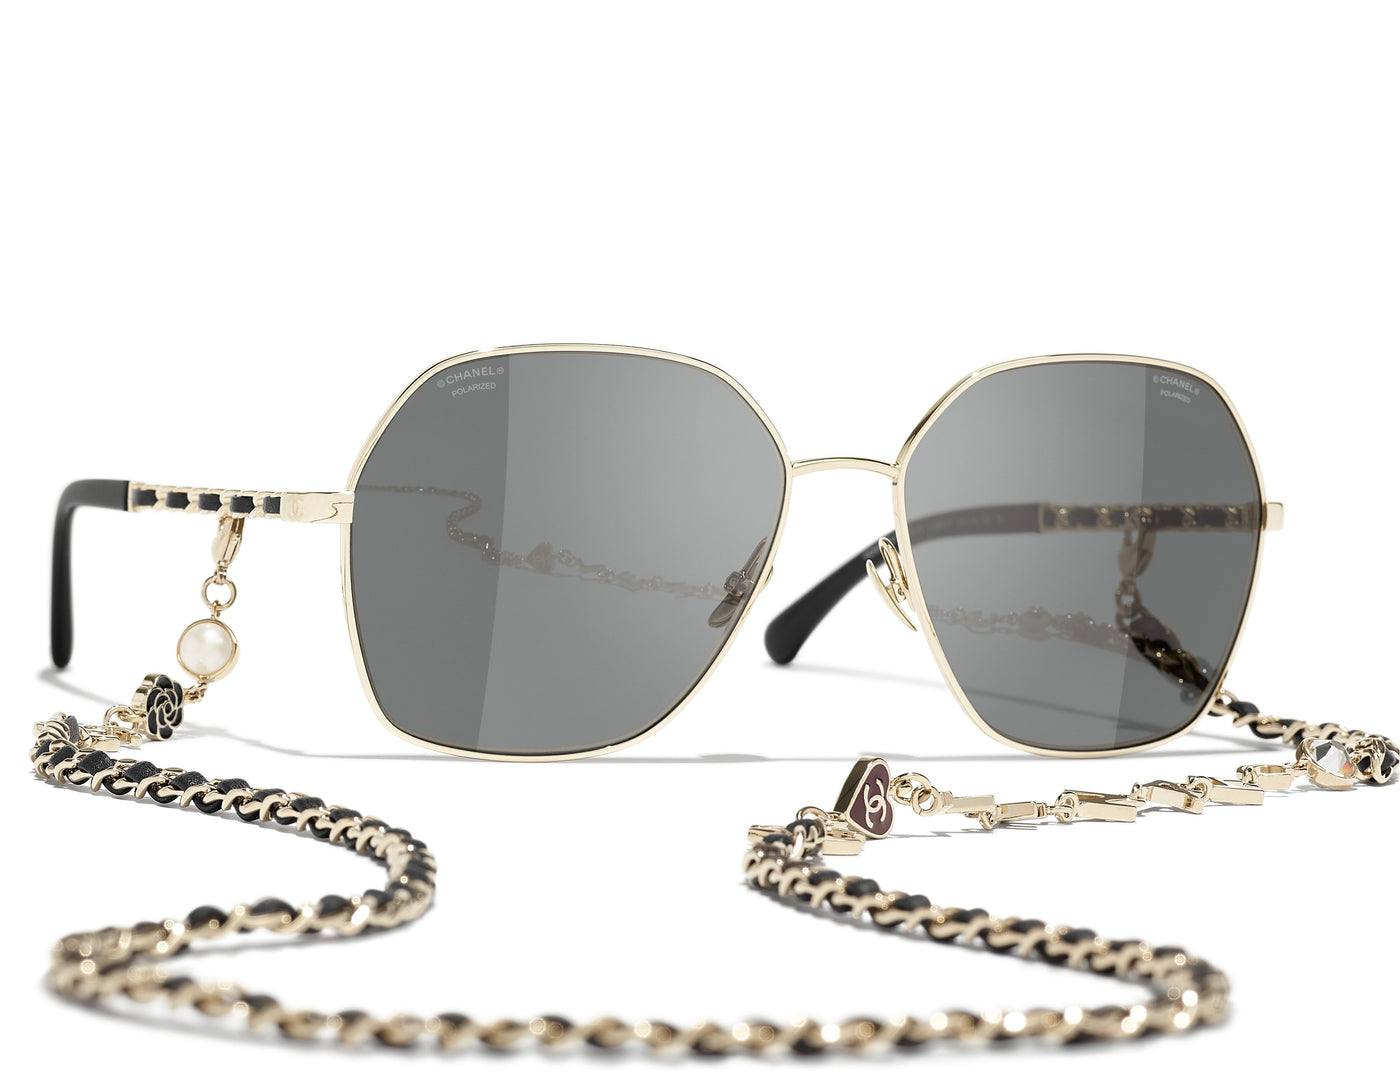 Chanel 4275Q C108/S2 Square Sunglasses Gray 59mm